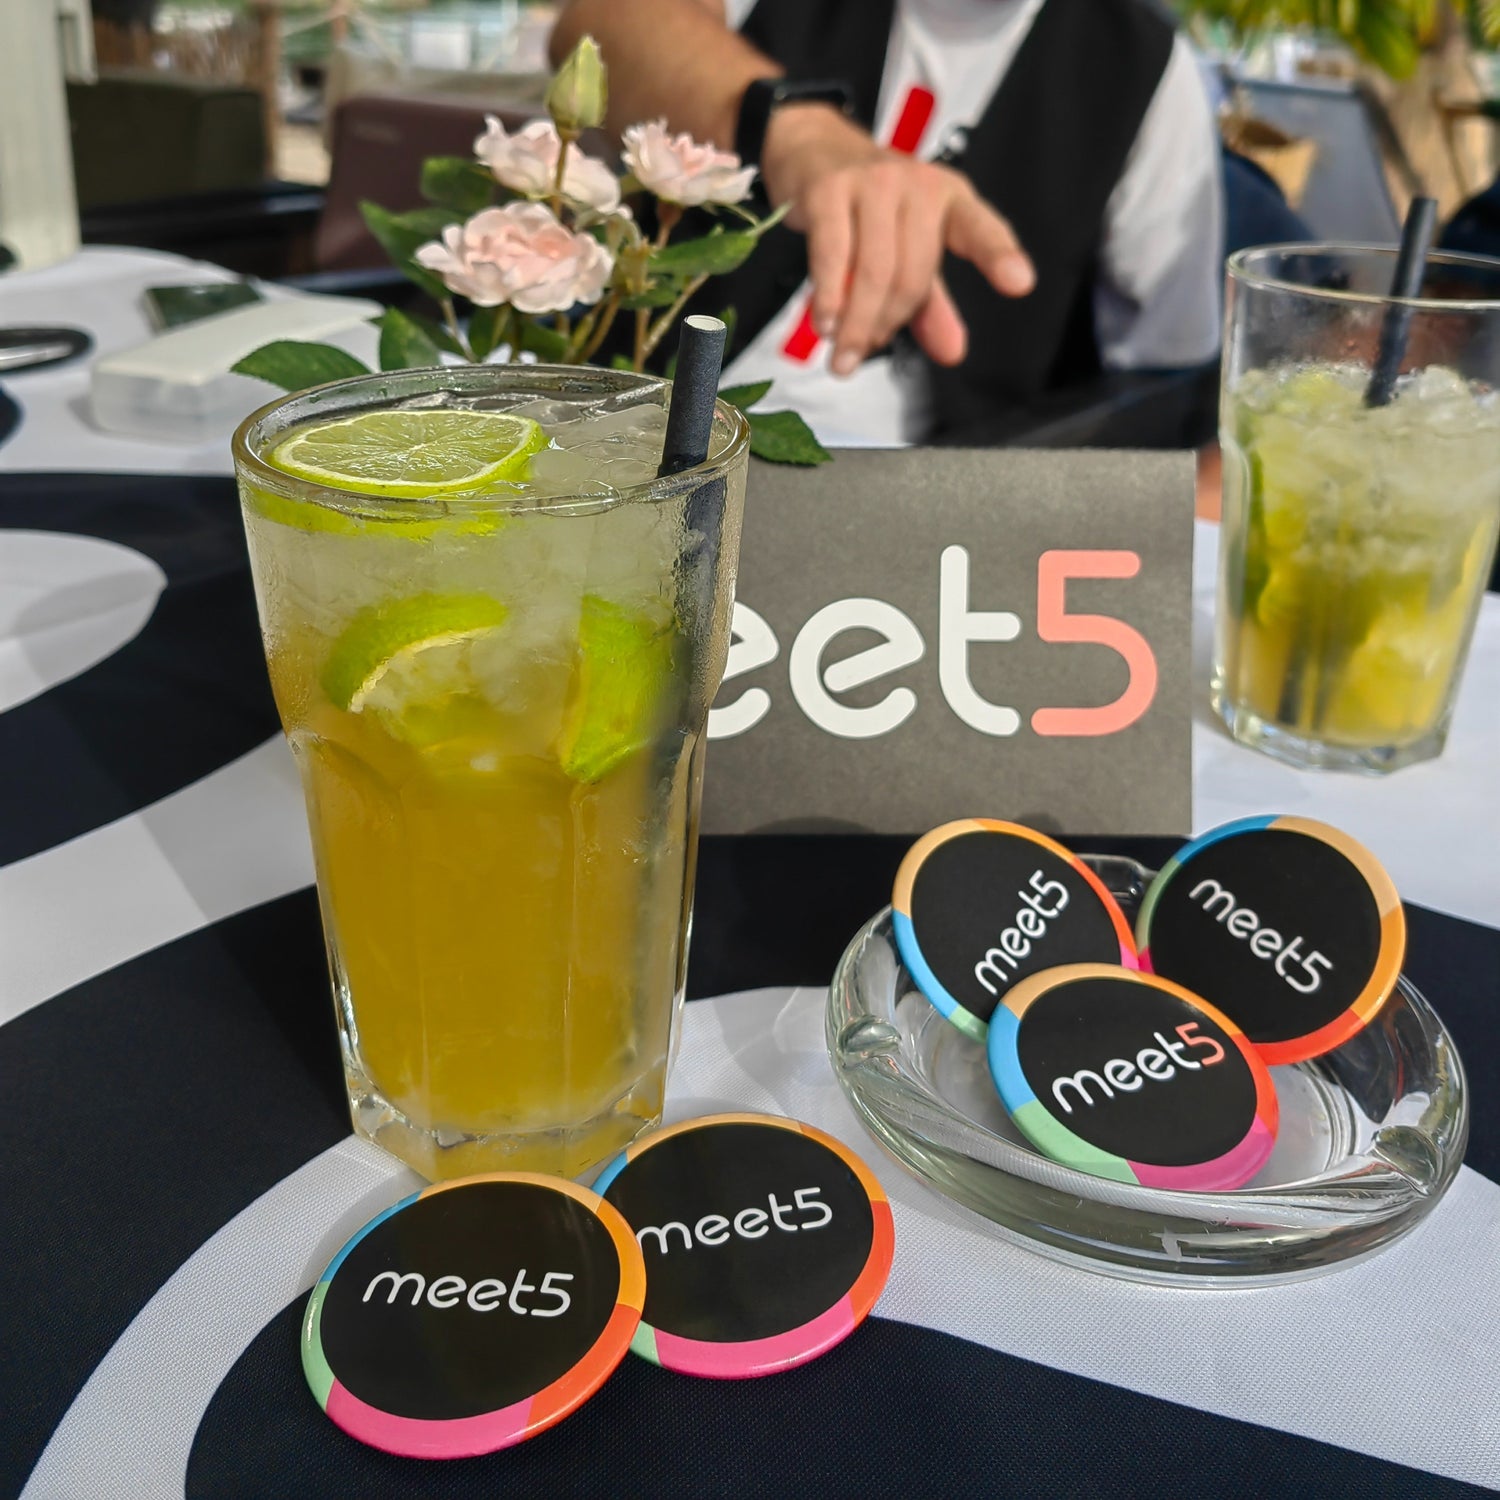 Stylische Meet5 Buttons perfekt für neue Leute kennenlernen mit Meet5